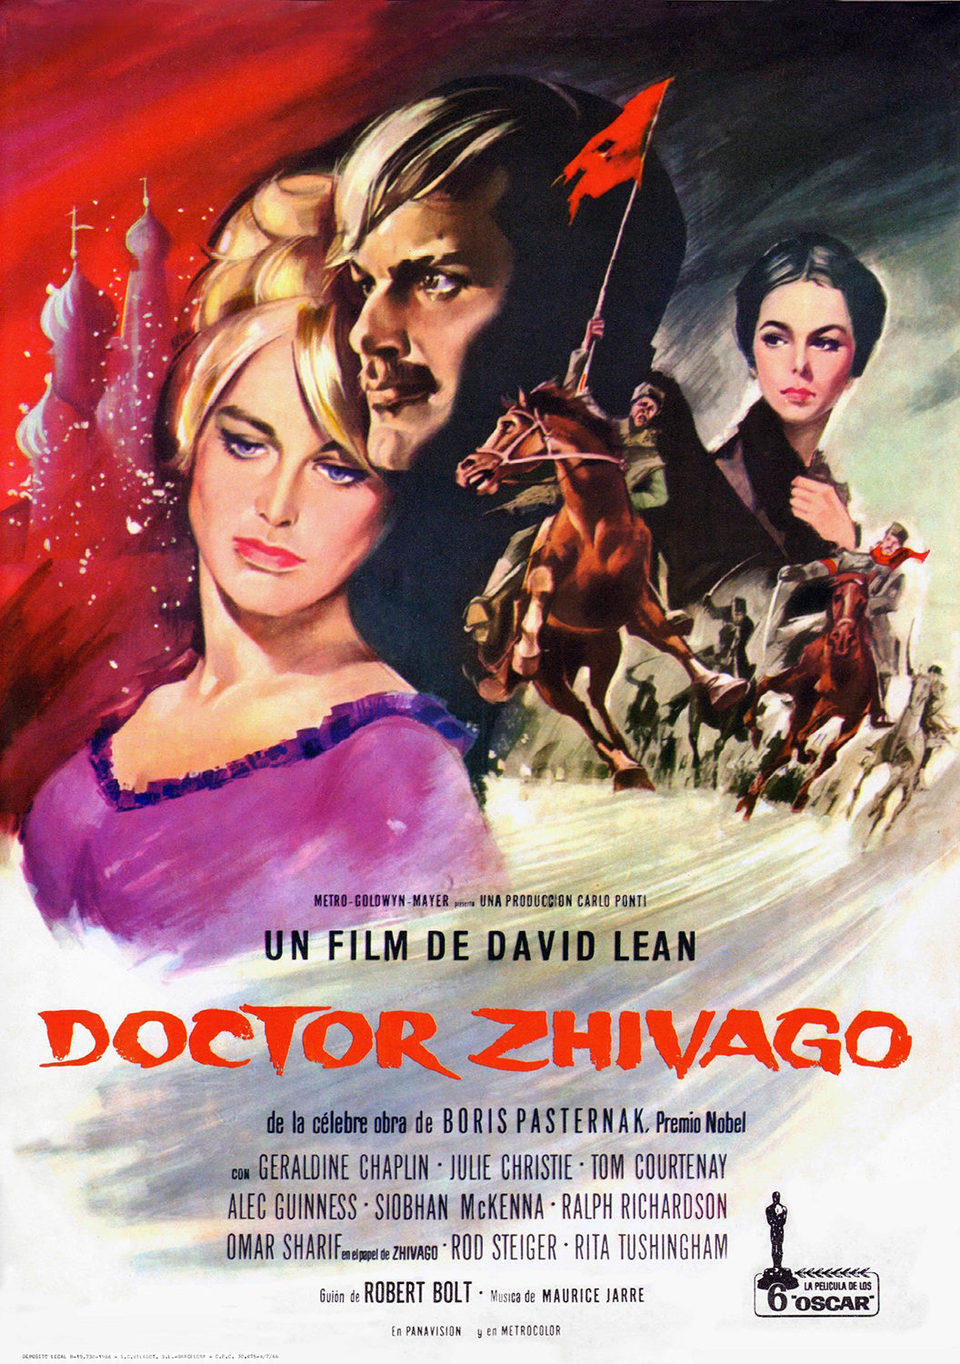 España poster for Doctor Zhivago